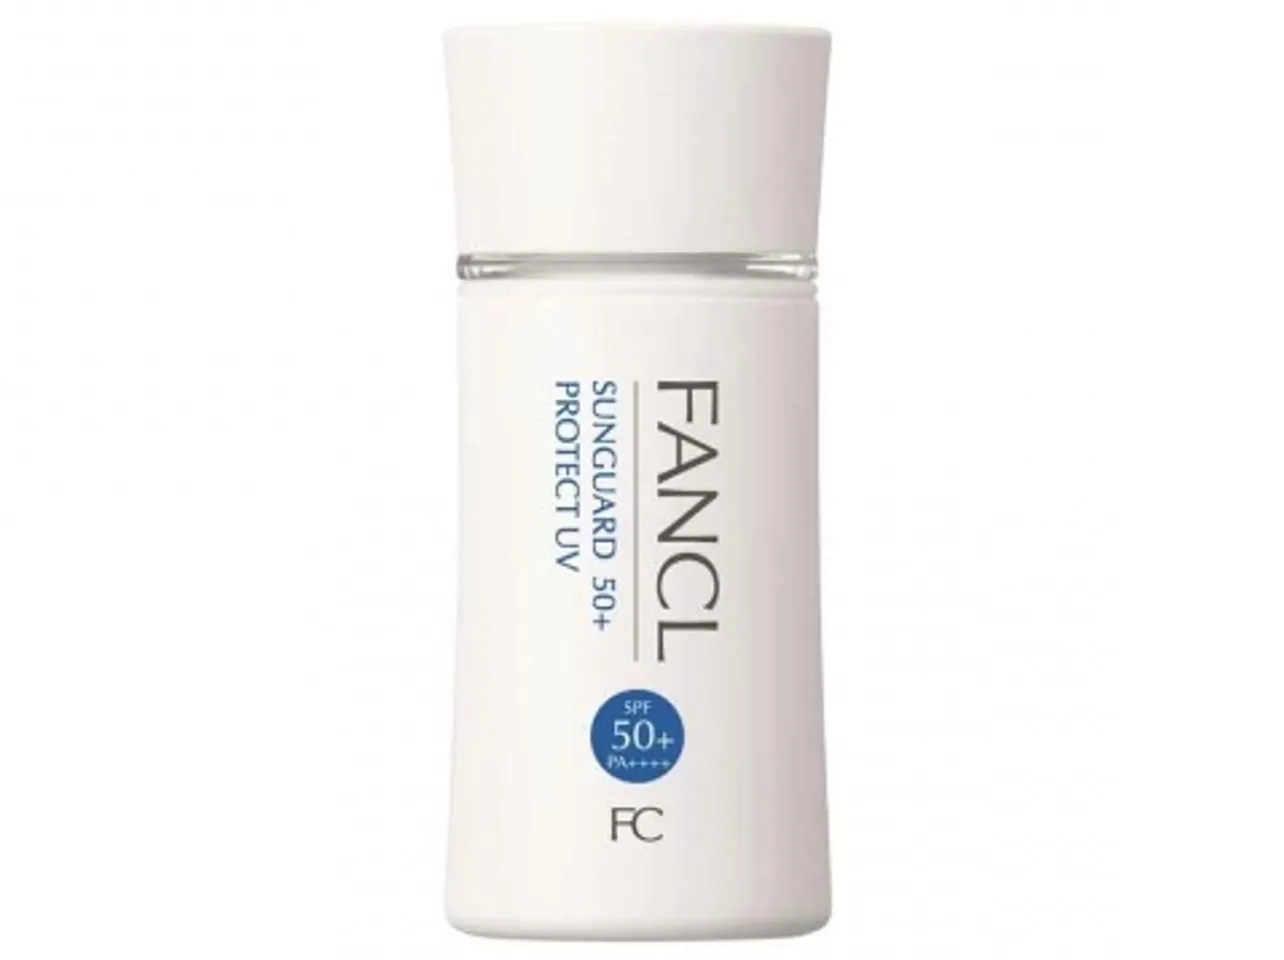 Kem chống nắng Fancl Sunguard 50+ Protect UV PA+++ không chứa cồn